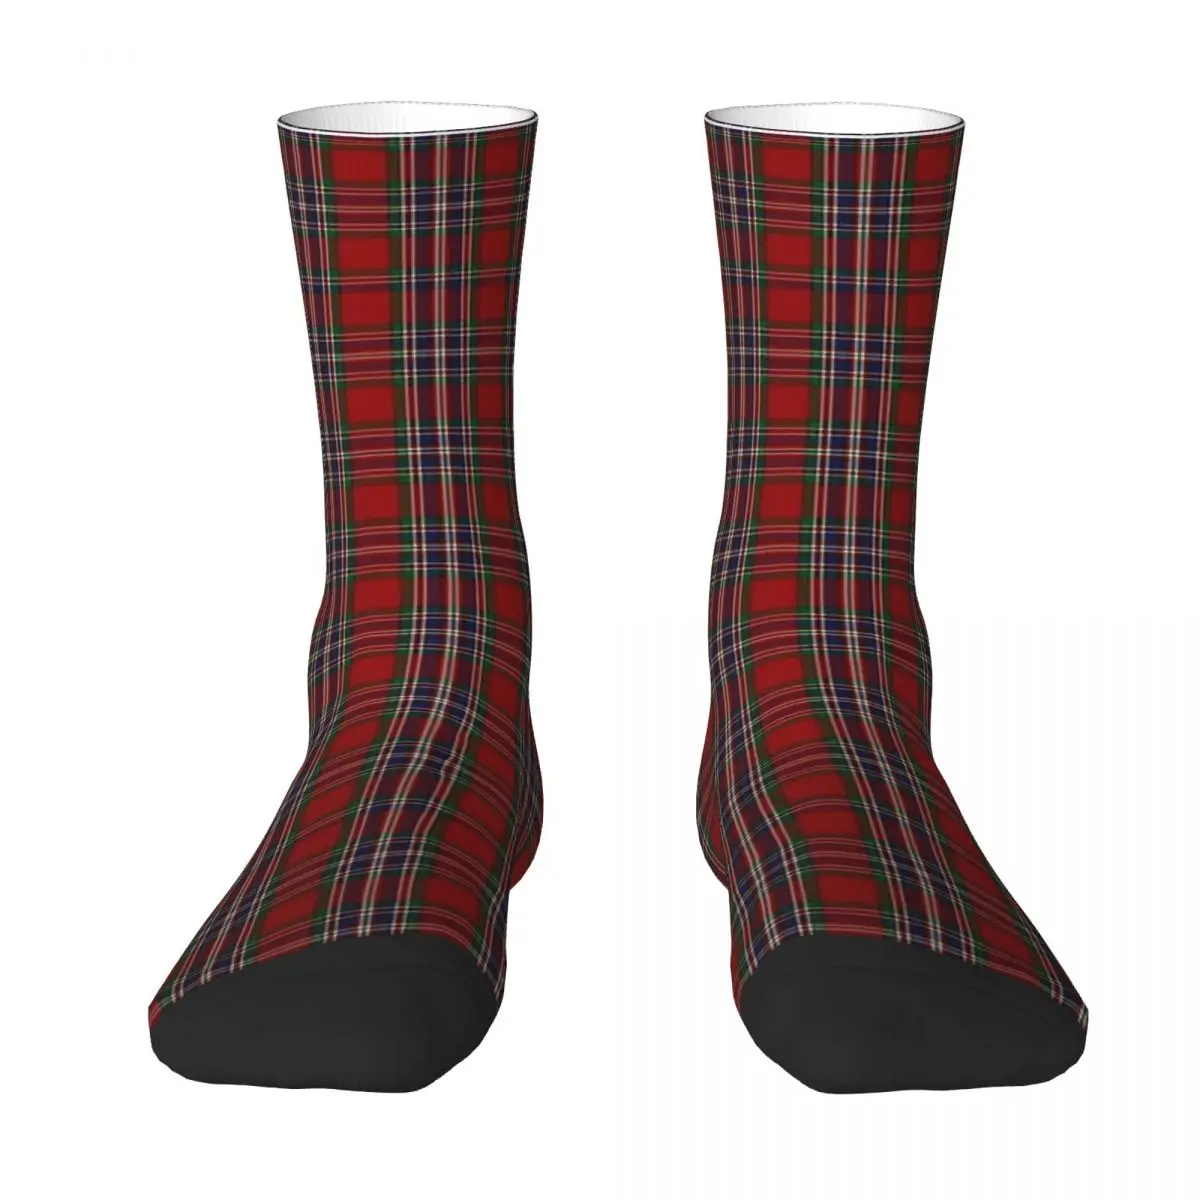 

MacFarlane Clan клетчатые носки унисекс зимние ветрозащитные счастливые носки уличный стиль сумасшедшие носки